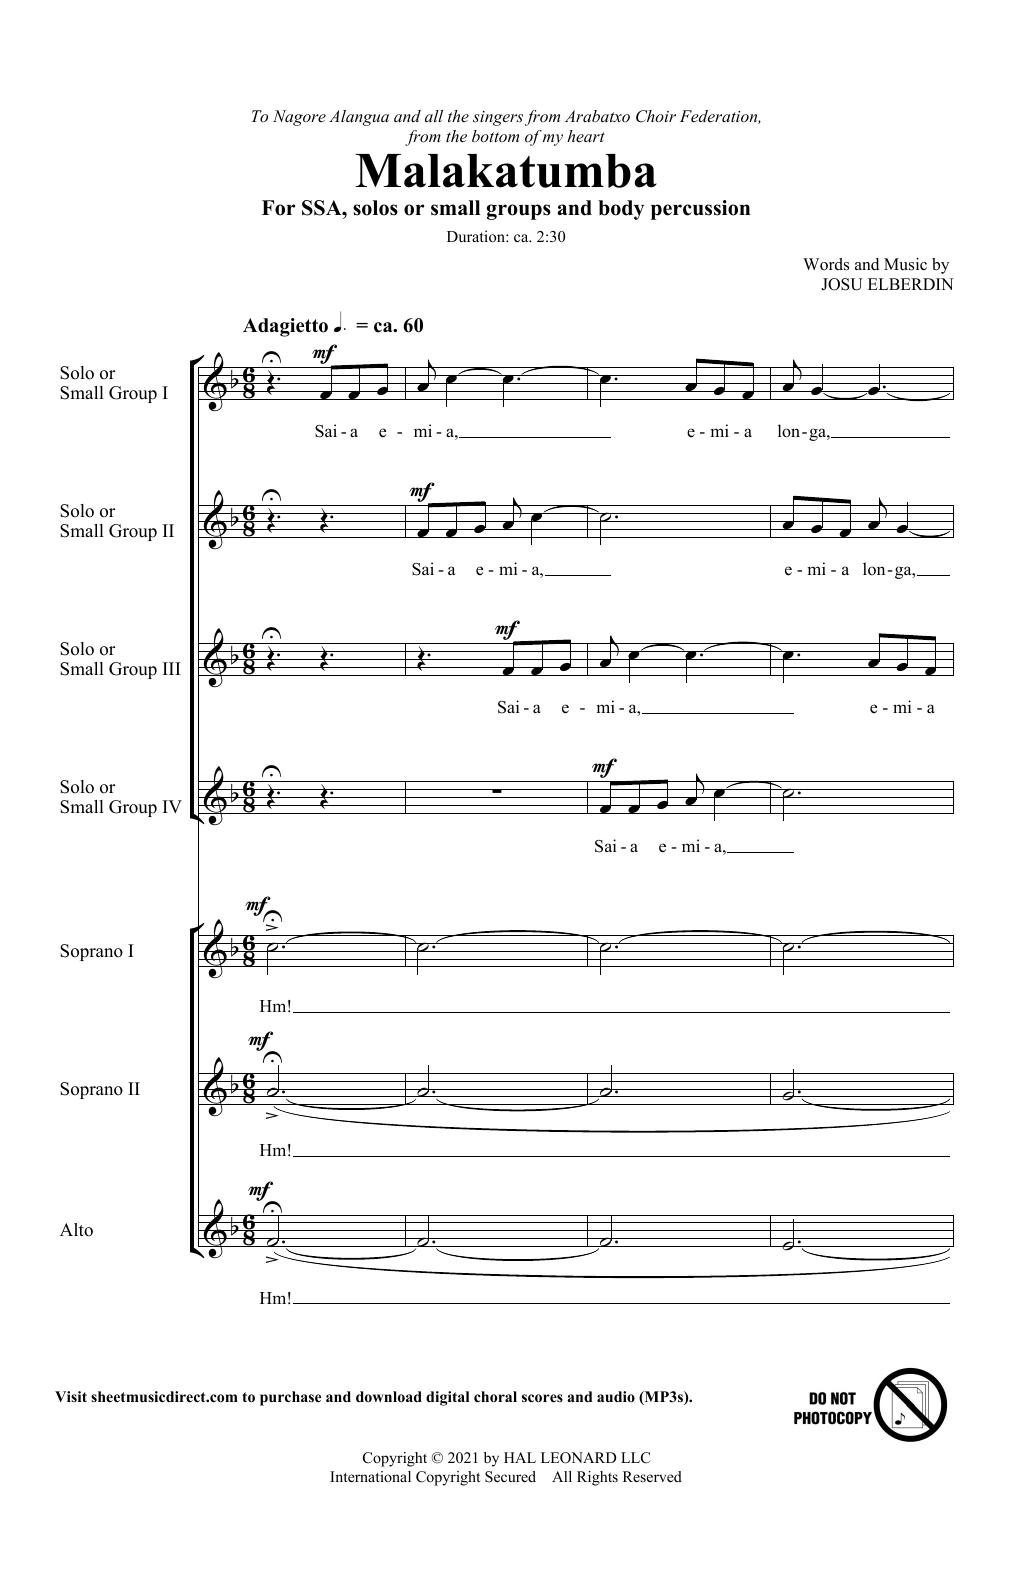 Josu Elberdin Malakatumba Sheet Music Notes & Chords for SAB Choir - Download or Print PDF